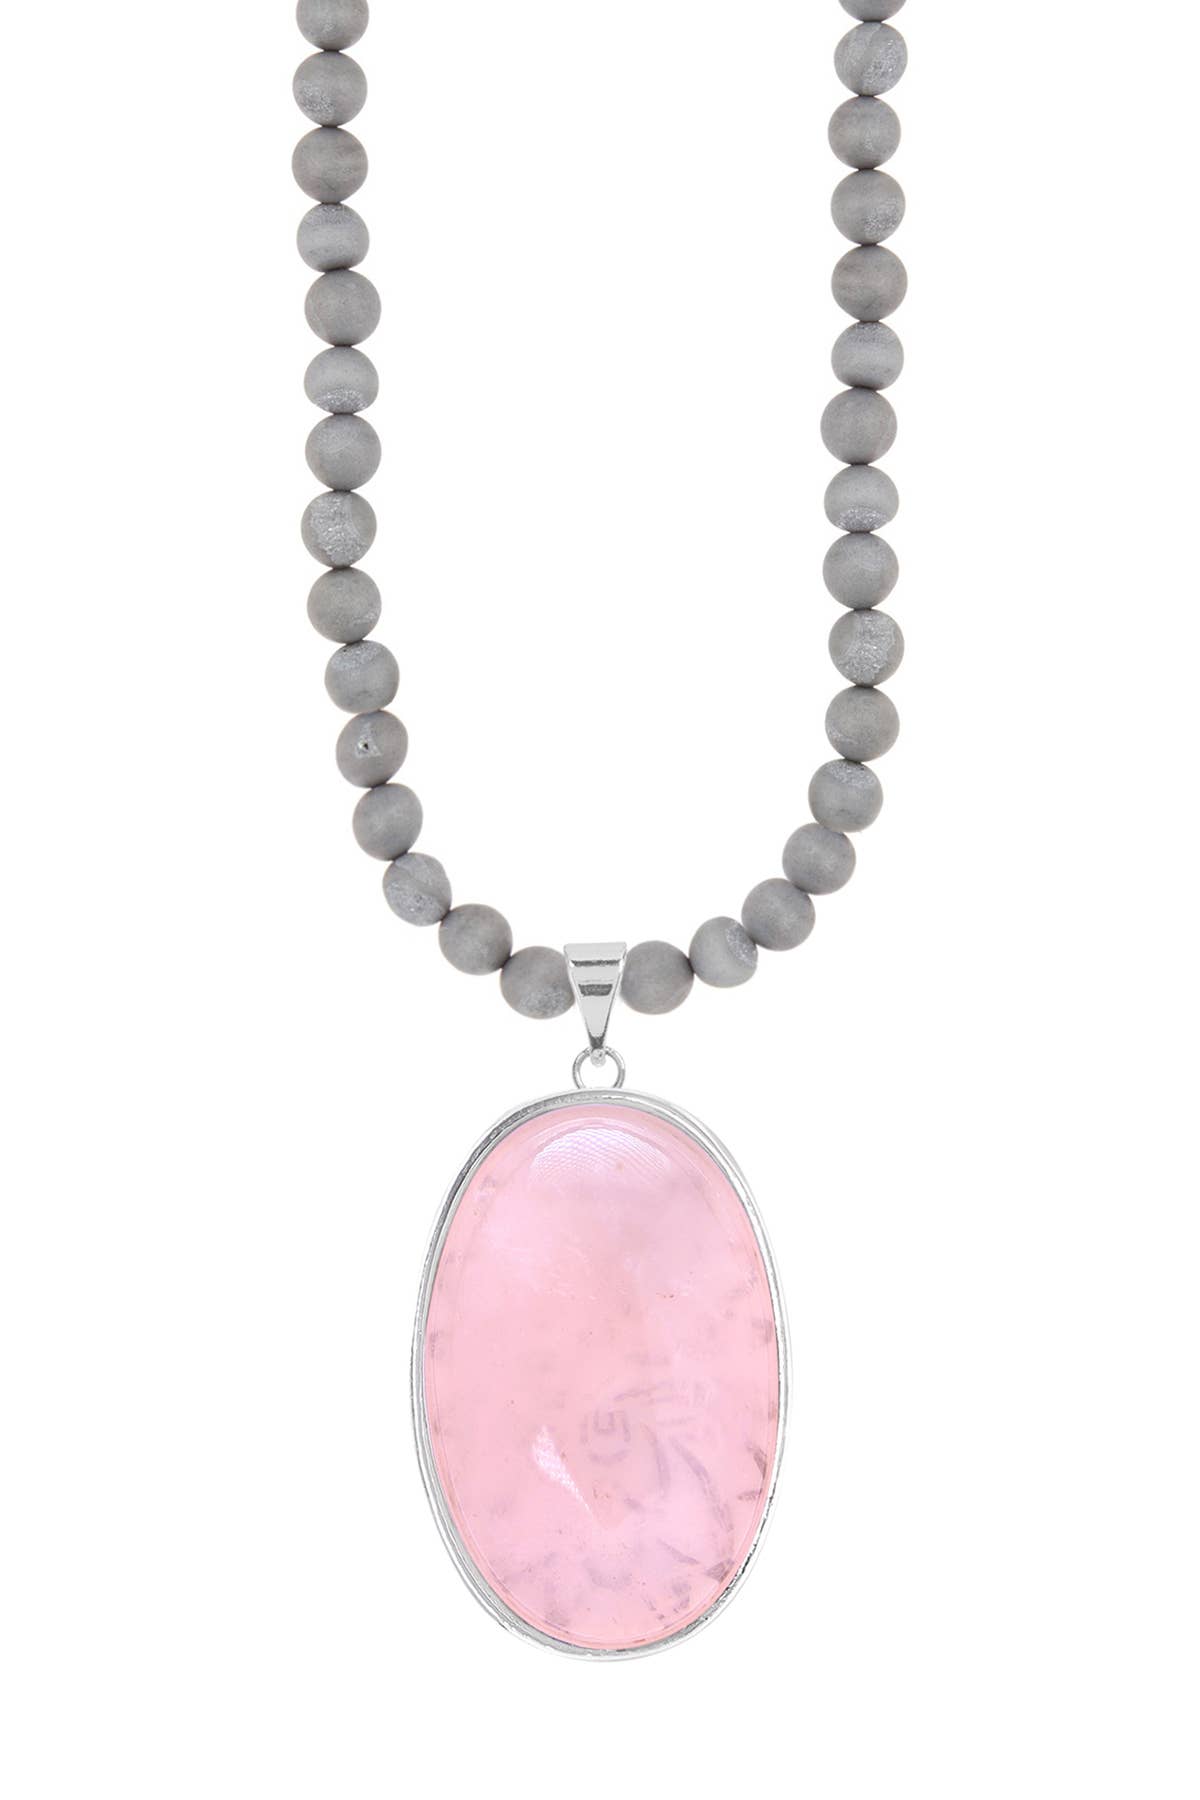 Gray Druzy Quartz Beads Necklace With Rose Quartz - SF